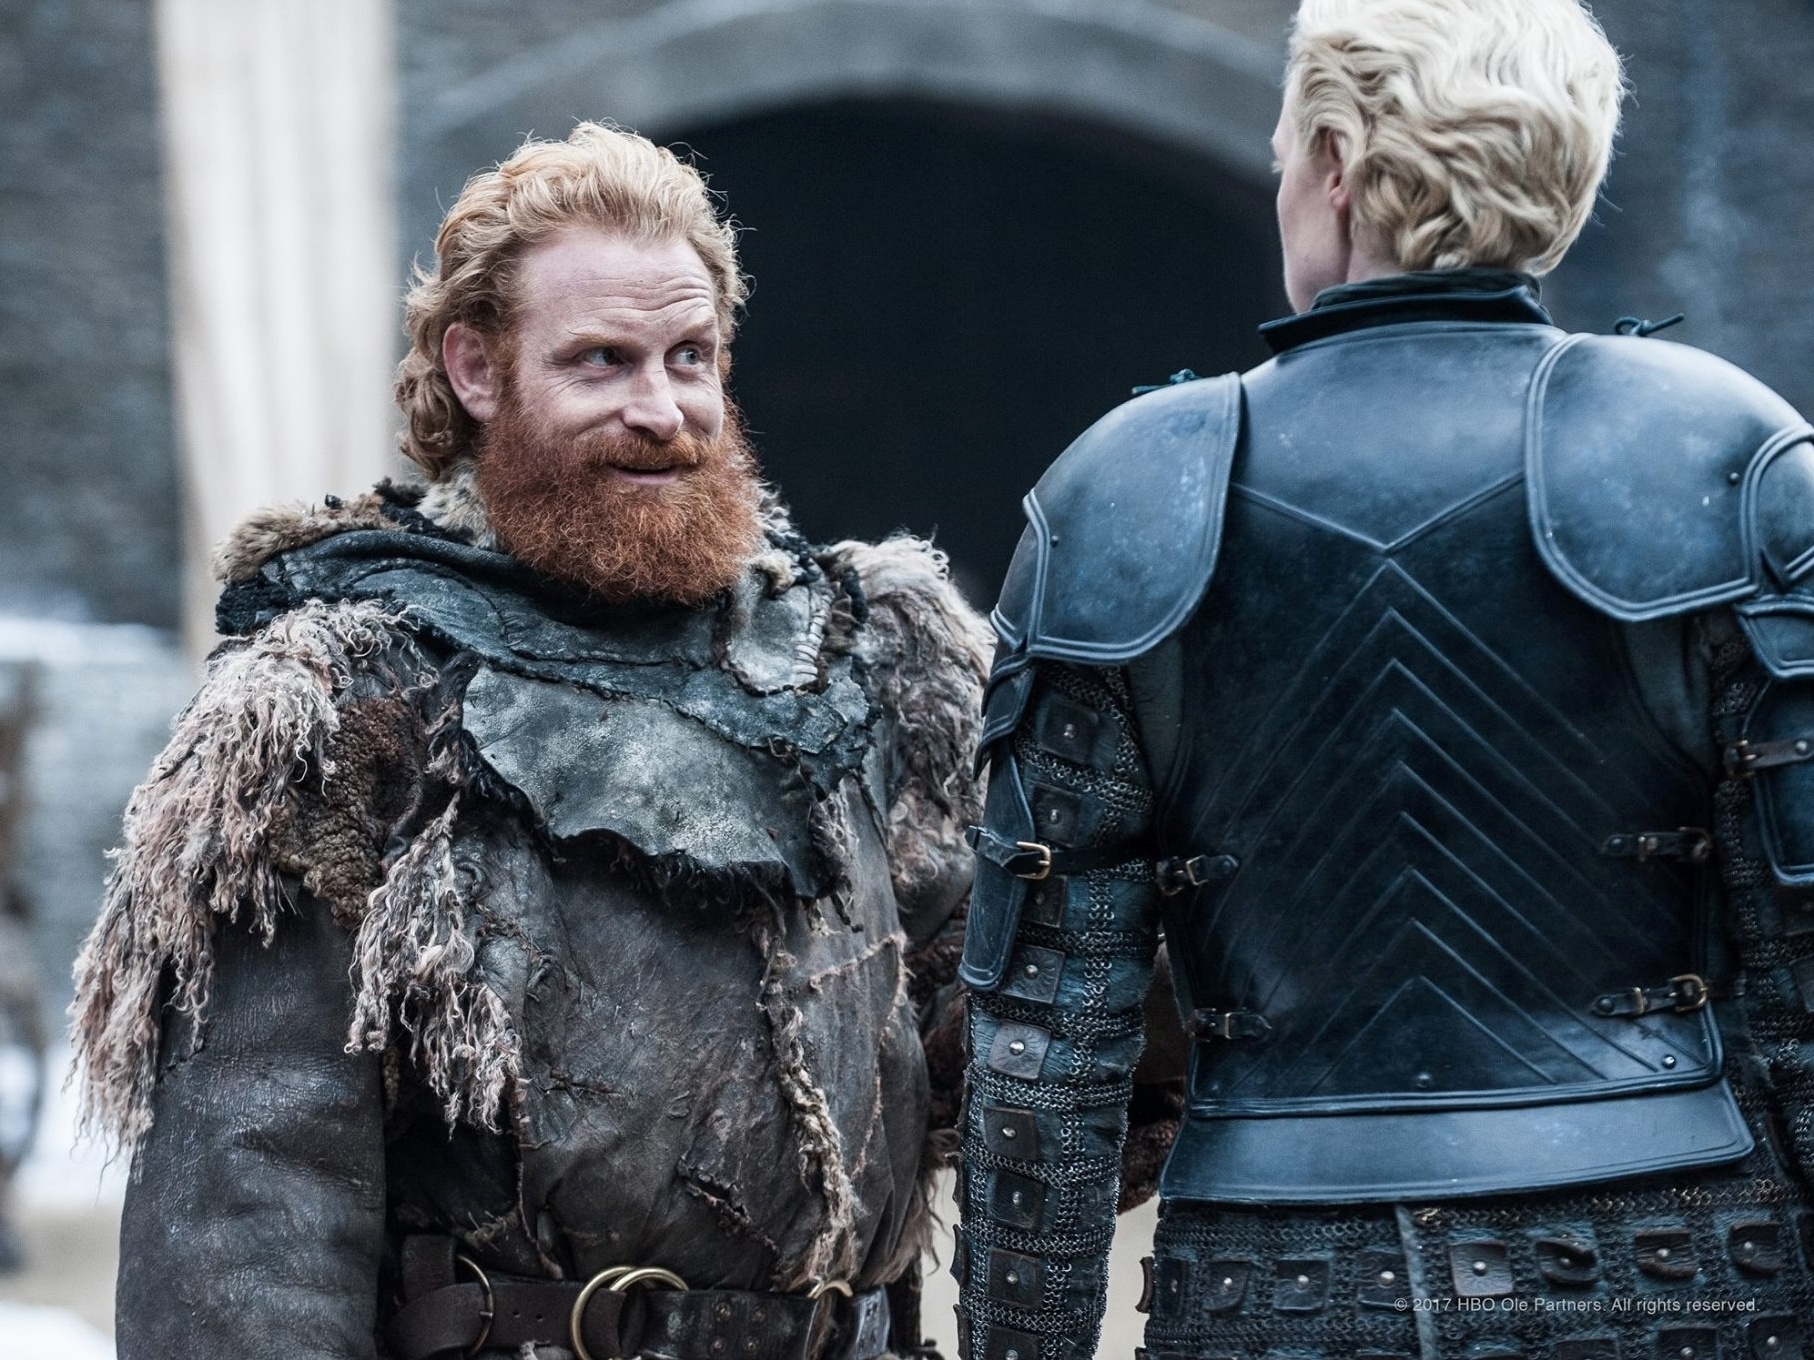 The Witcher: Ator de Game of Thrones entra para elenco da 2ª temporada -  Notícias de séries - AdoroCinema